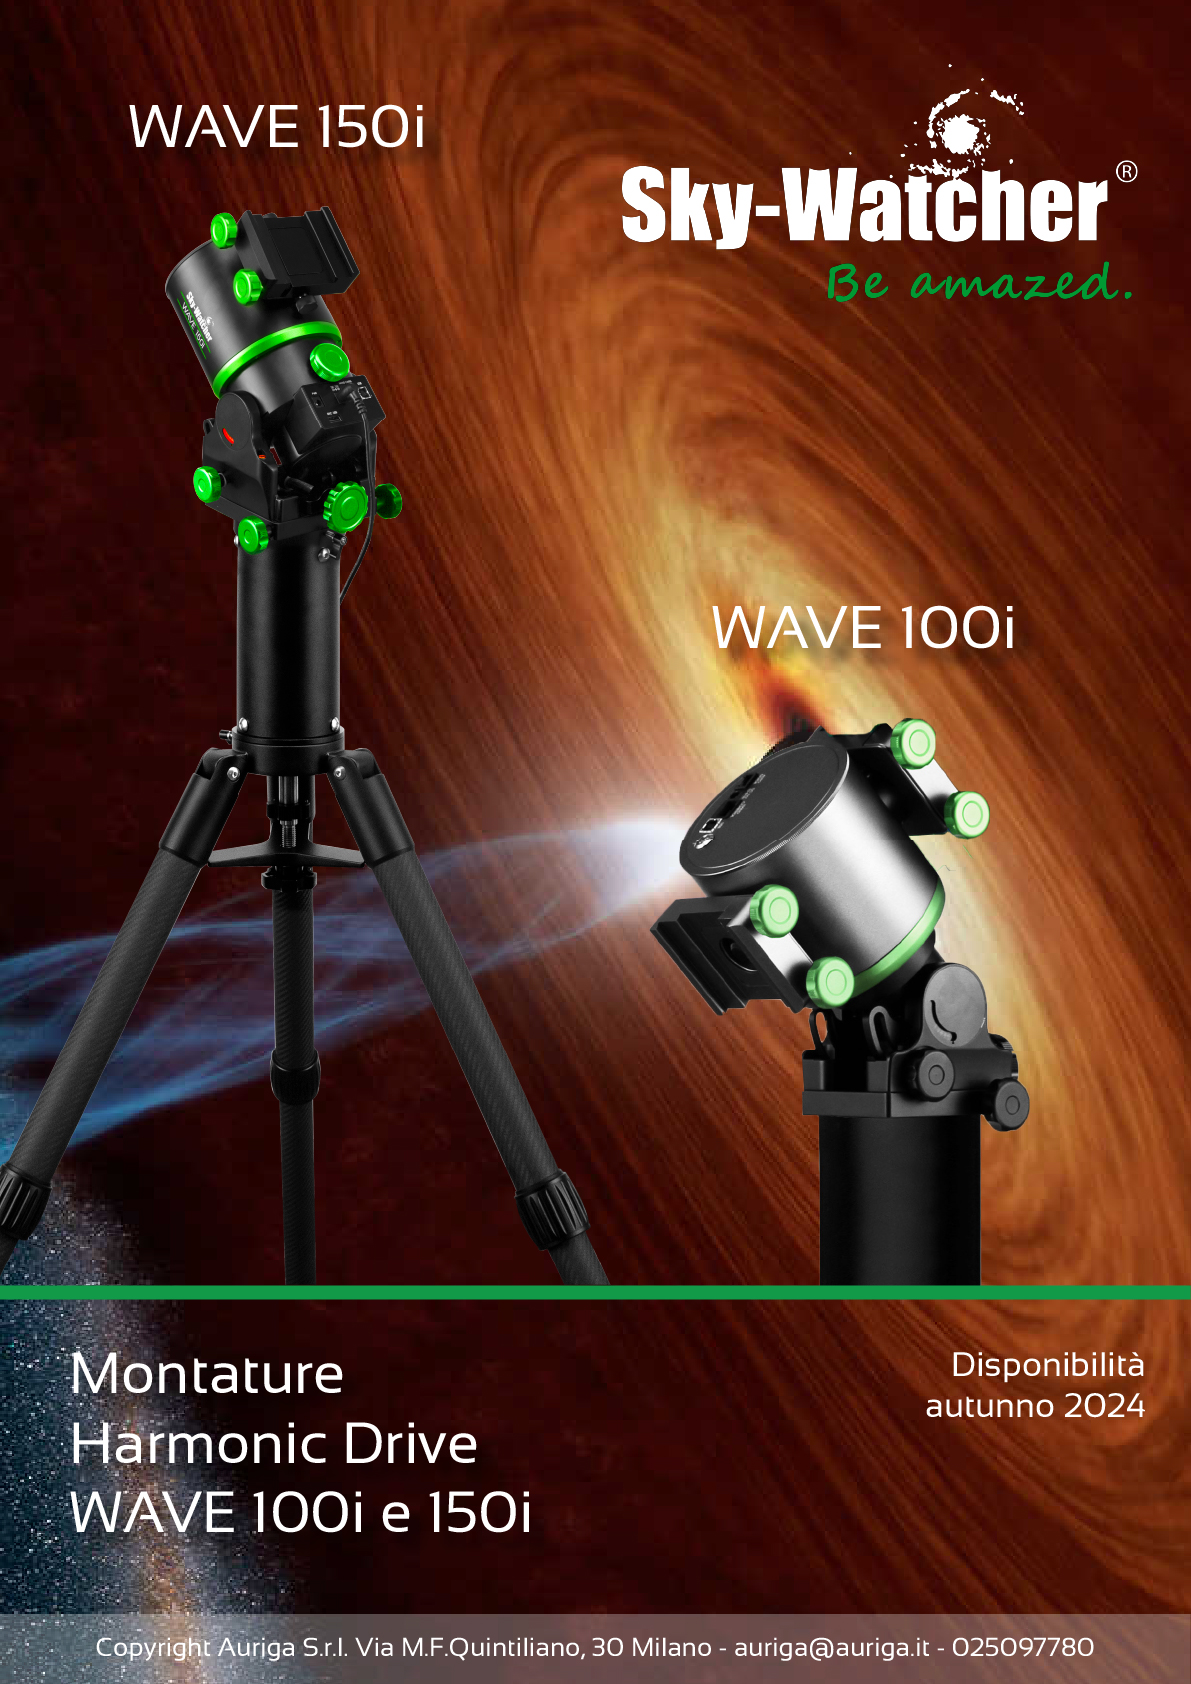 Al momento stai visualizzando Montature Harmonic Drive Sky-Watcher Wave 150i e 100i